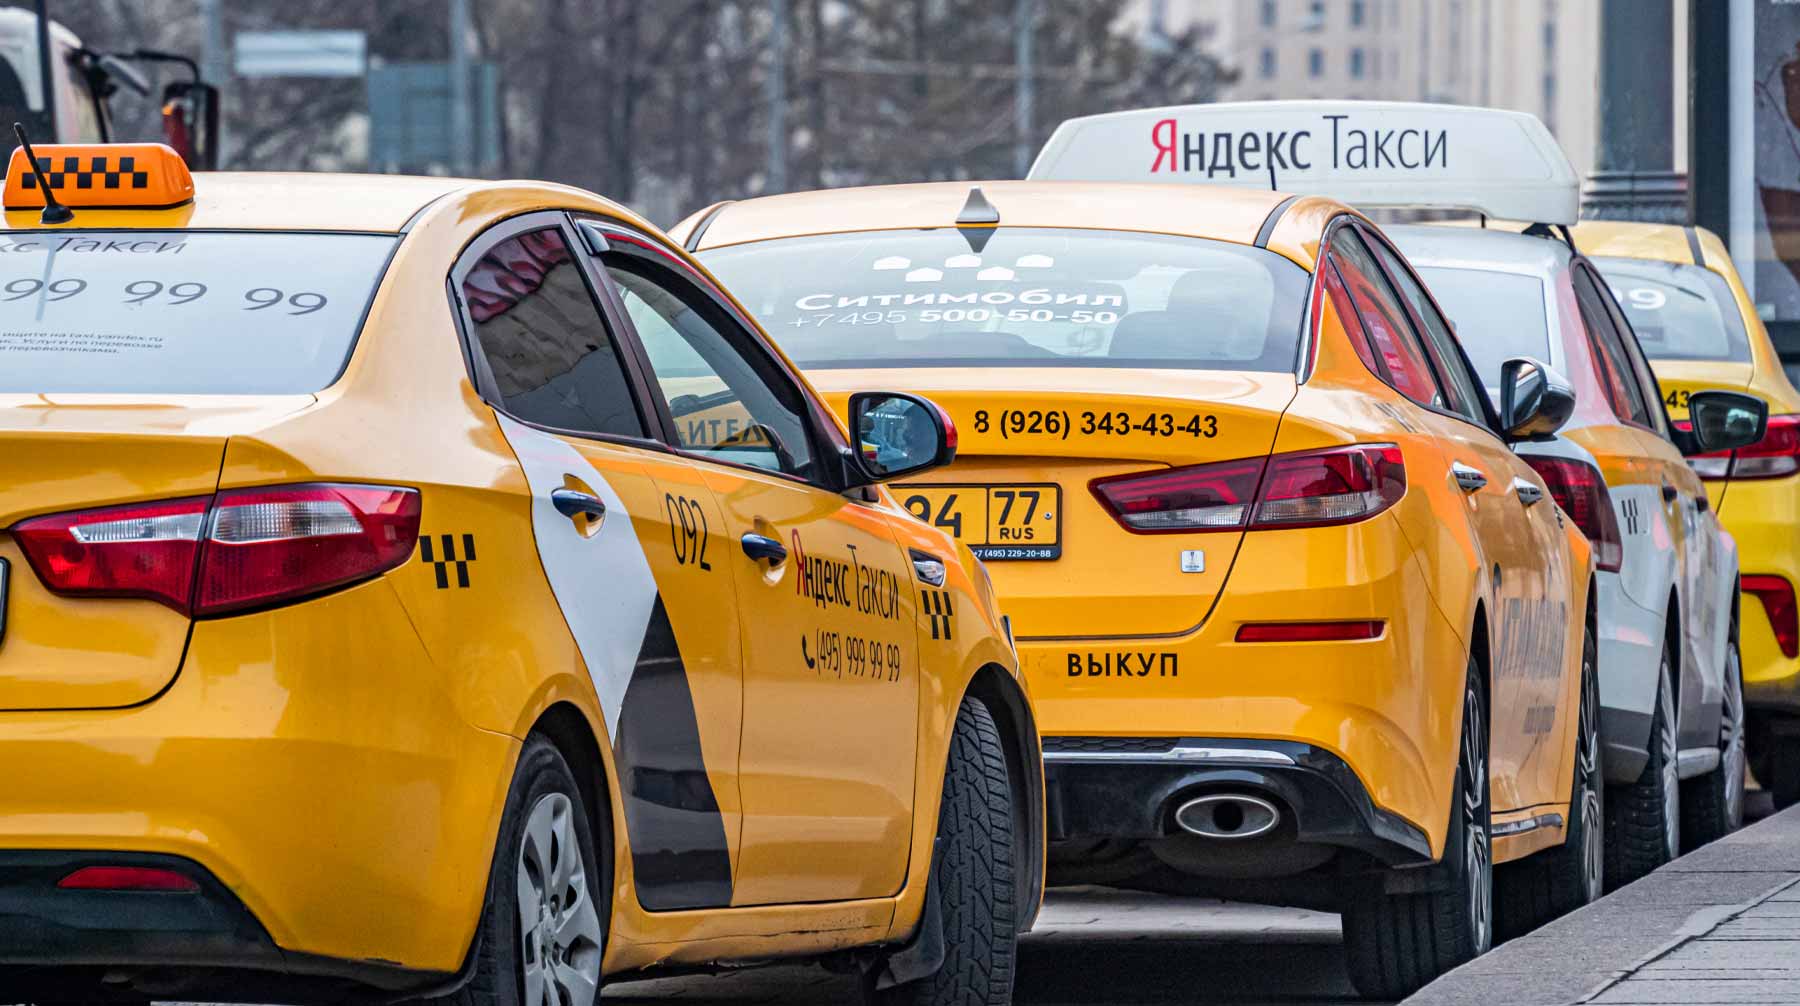 Ранее сообщалось, что таксист не смог считать QR-код цифрового пропуска девушки, вышвырнул ее из машины и избил Фото: © Global Look Press / Konstantin Kokoshkin